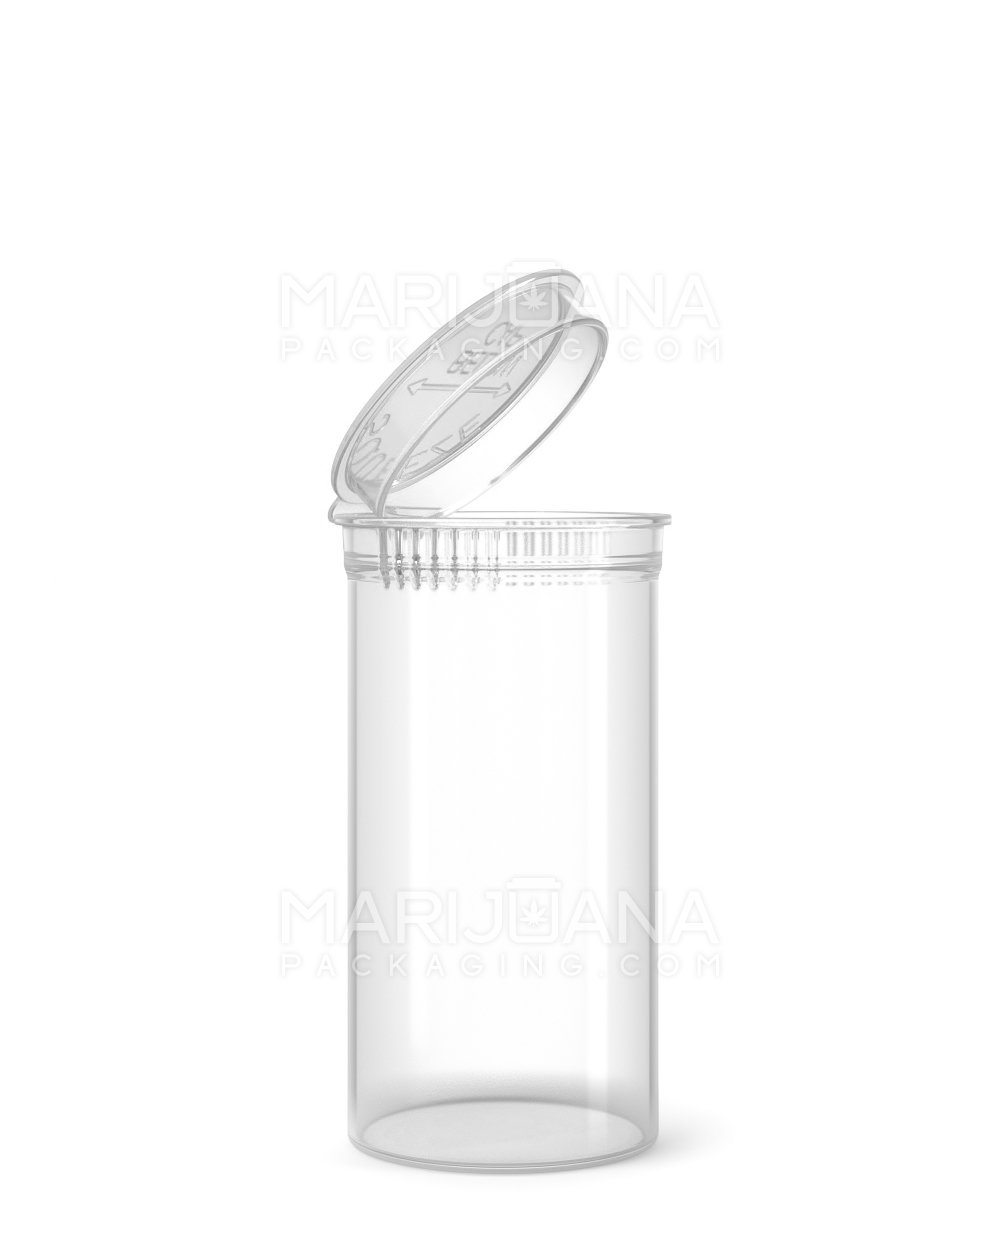 Child Resistant Clear Pop Top Bottles | 13dr - 2g | Sample - 1